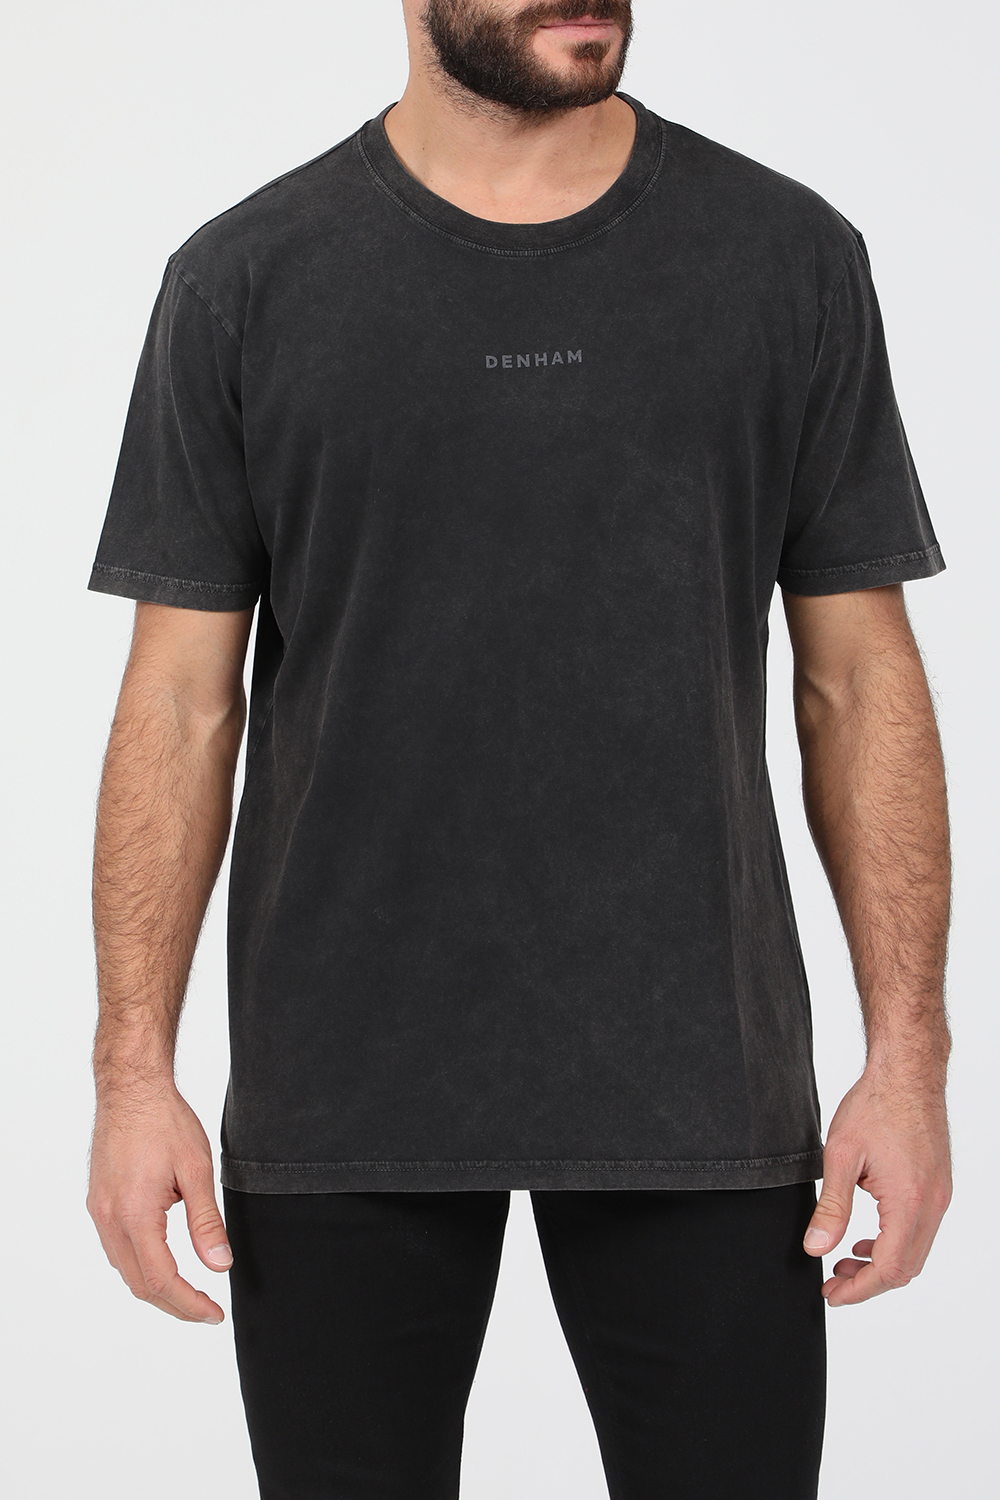 Ανδρικά/Ρούχα/Μπλούζες/Κοντομάνικες DENHAM - Ανδρικό t-shirt DENHAM ROGER ανθρακί